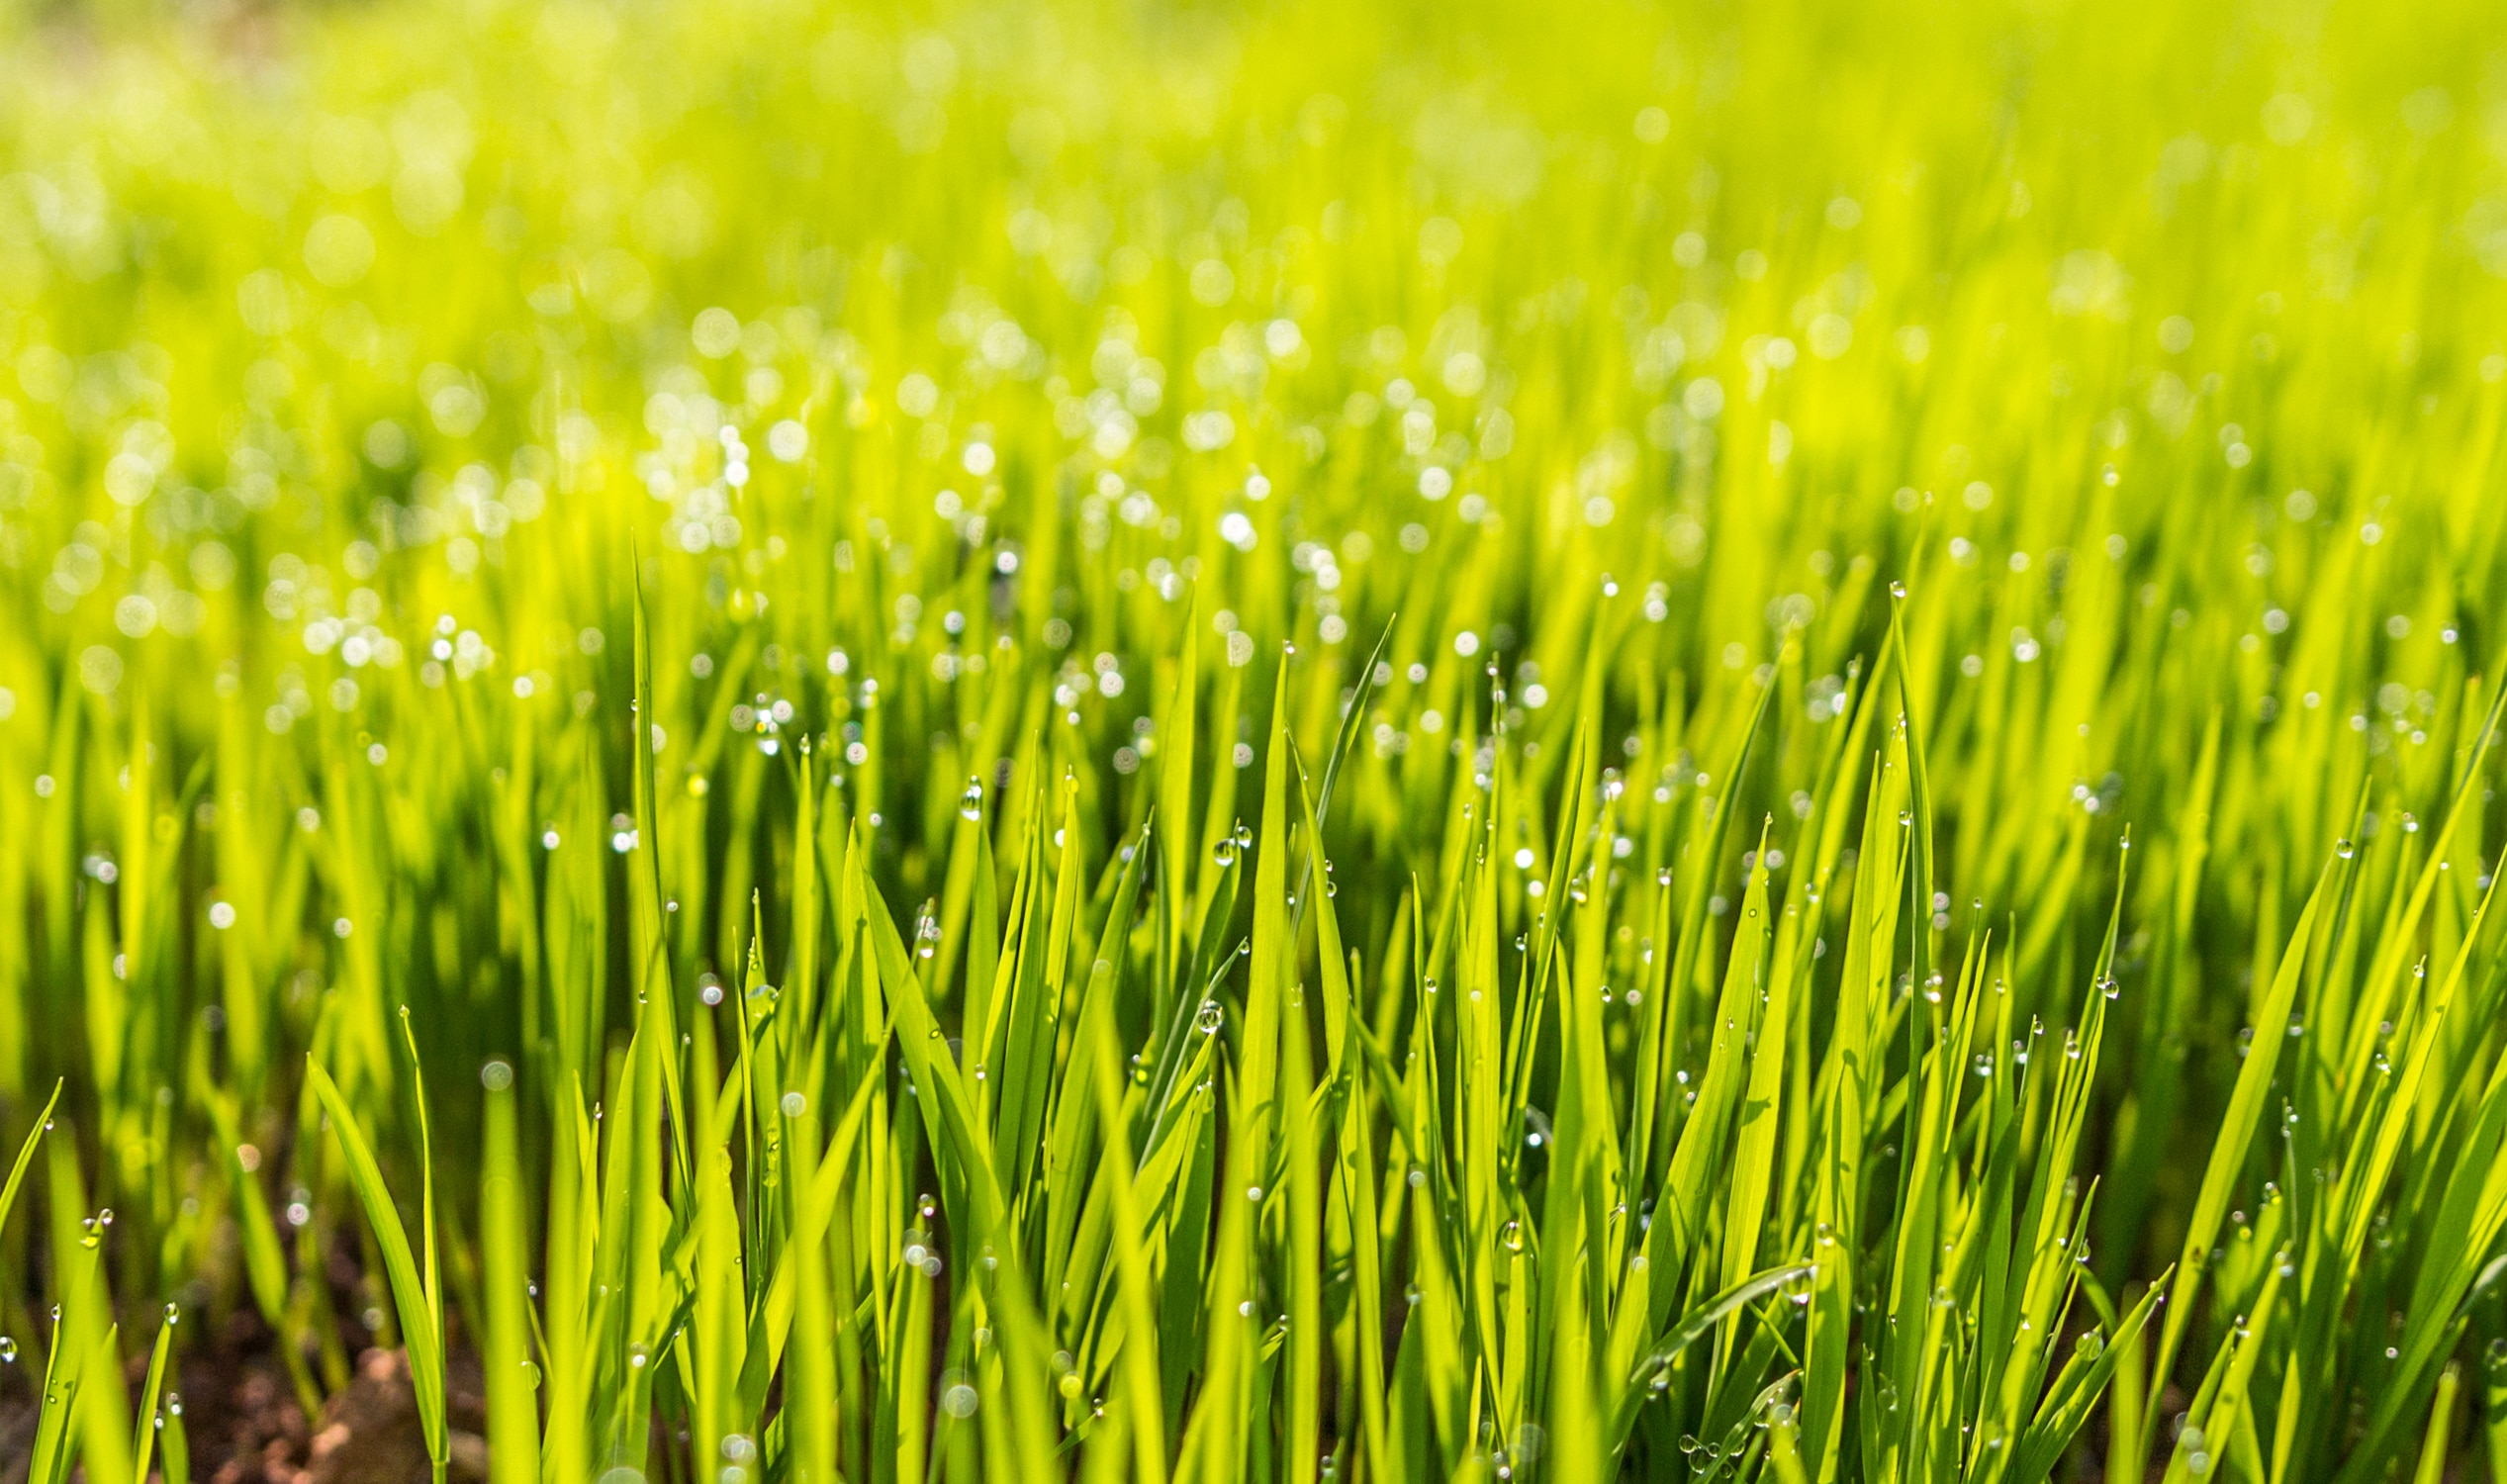 tilt shift photo of green grass